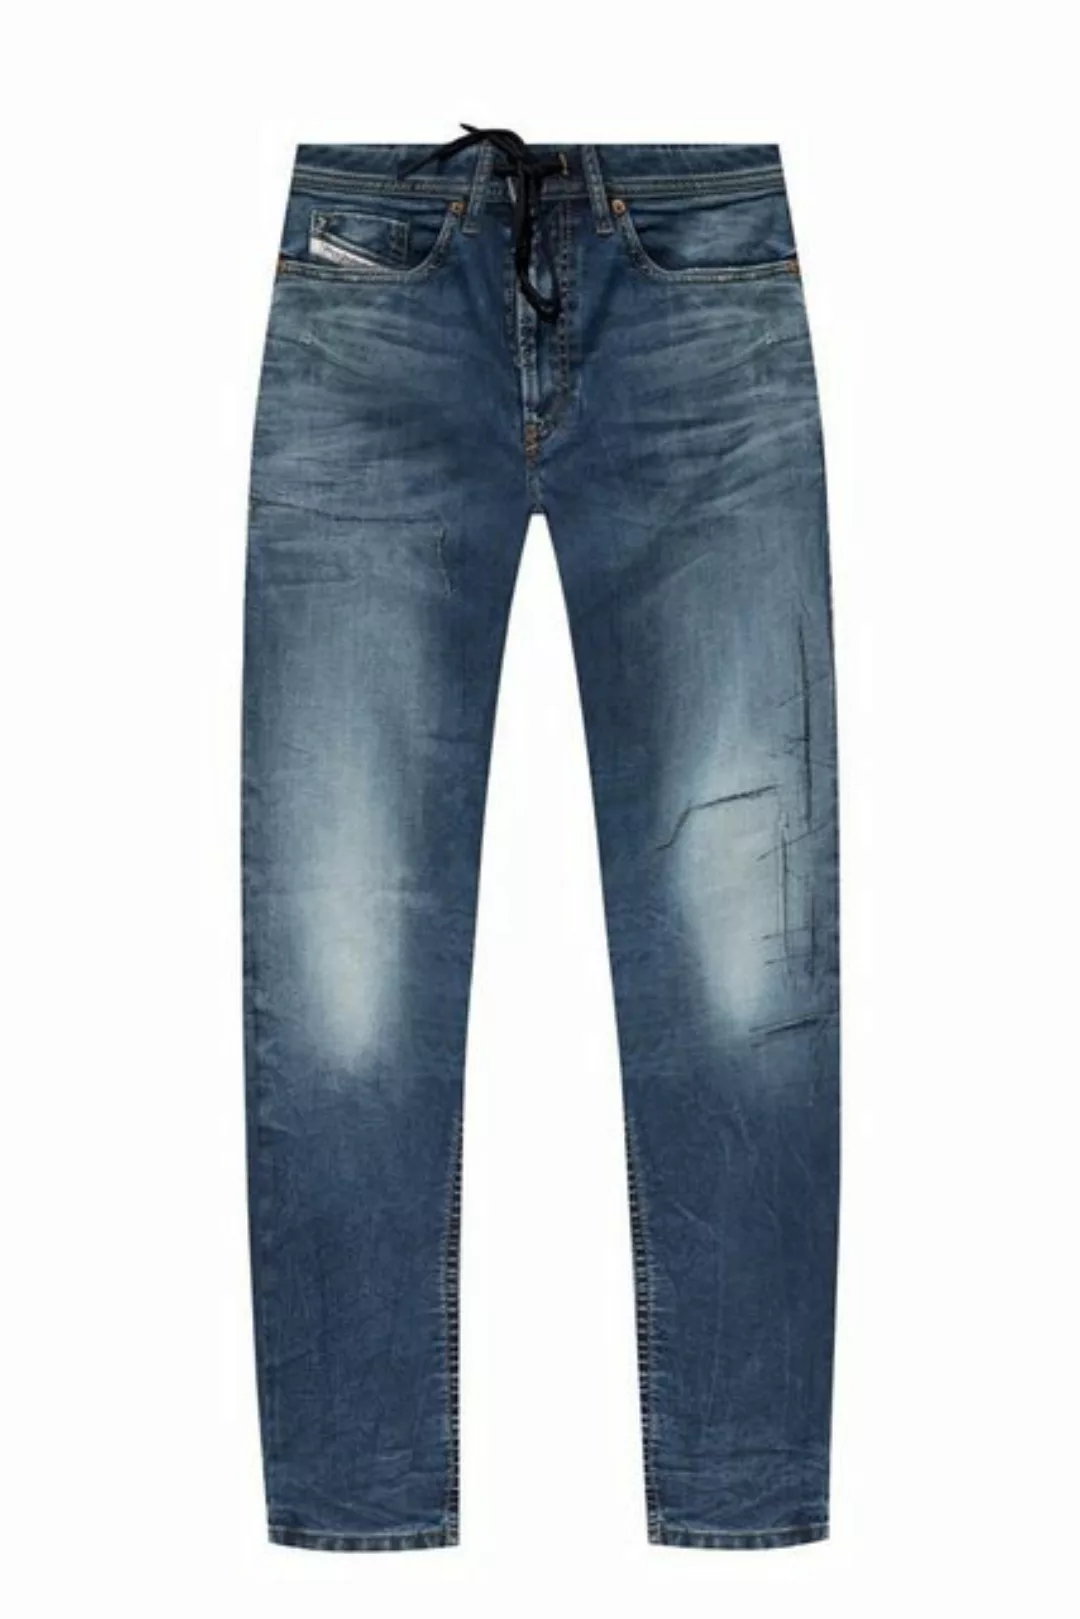 Diesel Slim-fit-Jeans Stretch Jogg Jeans Hose - Thommer 069SZ - Länge:32 günstig online kaufen